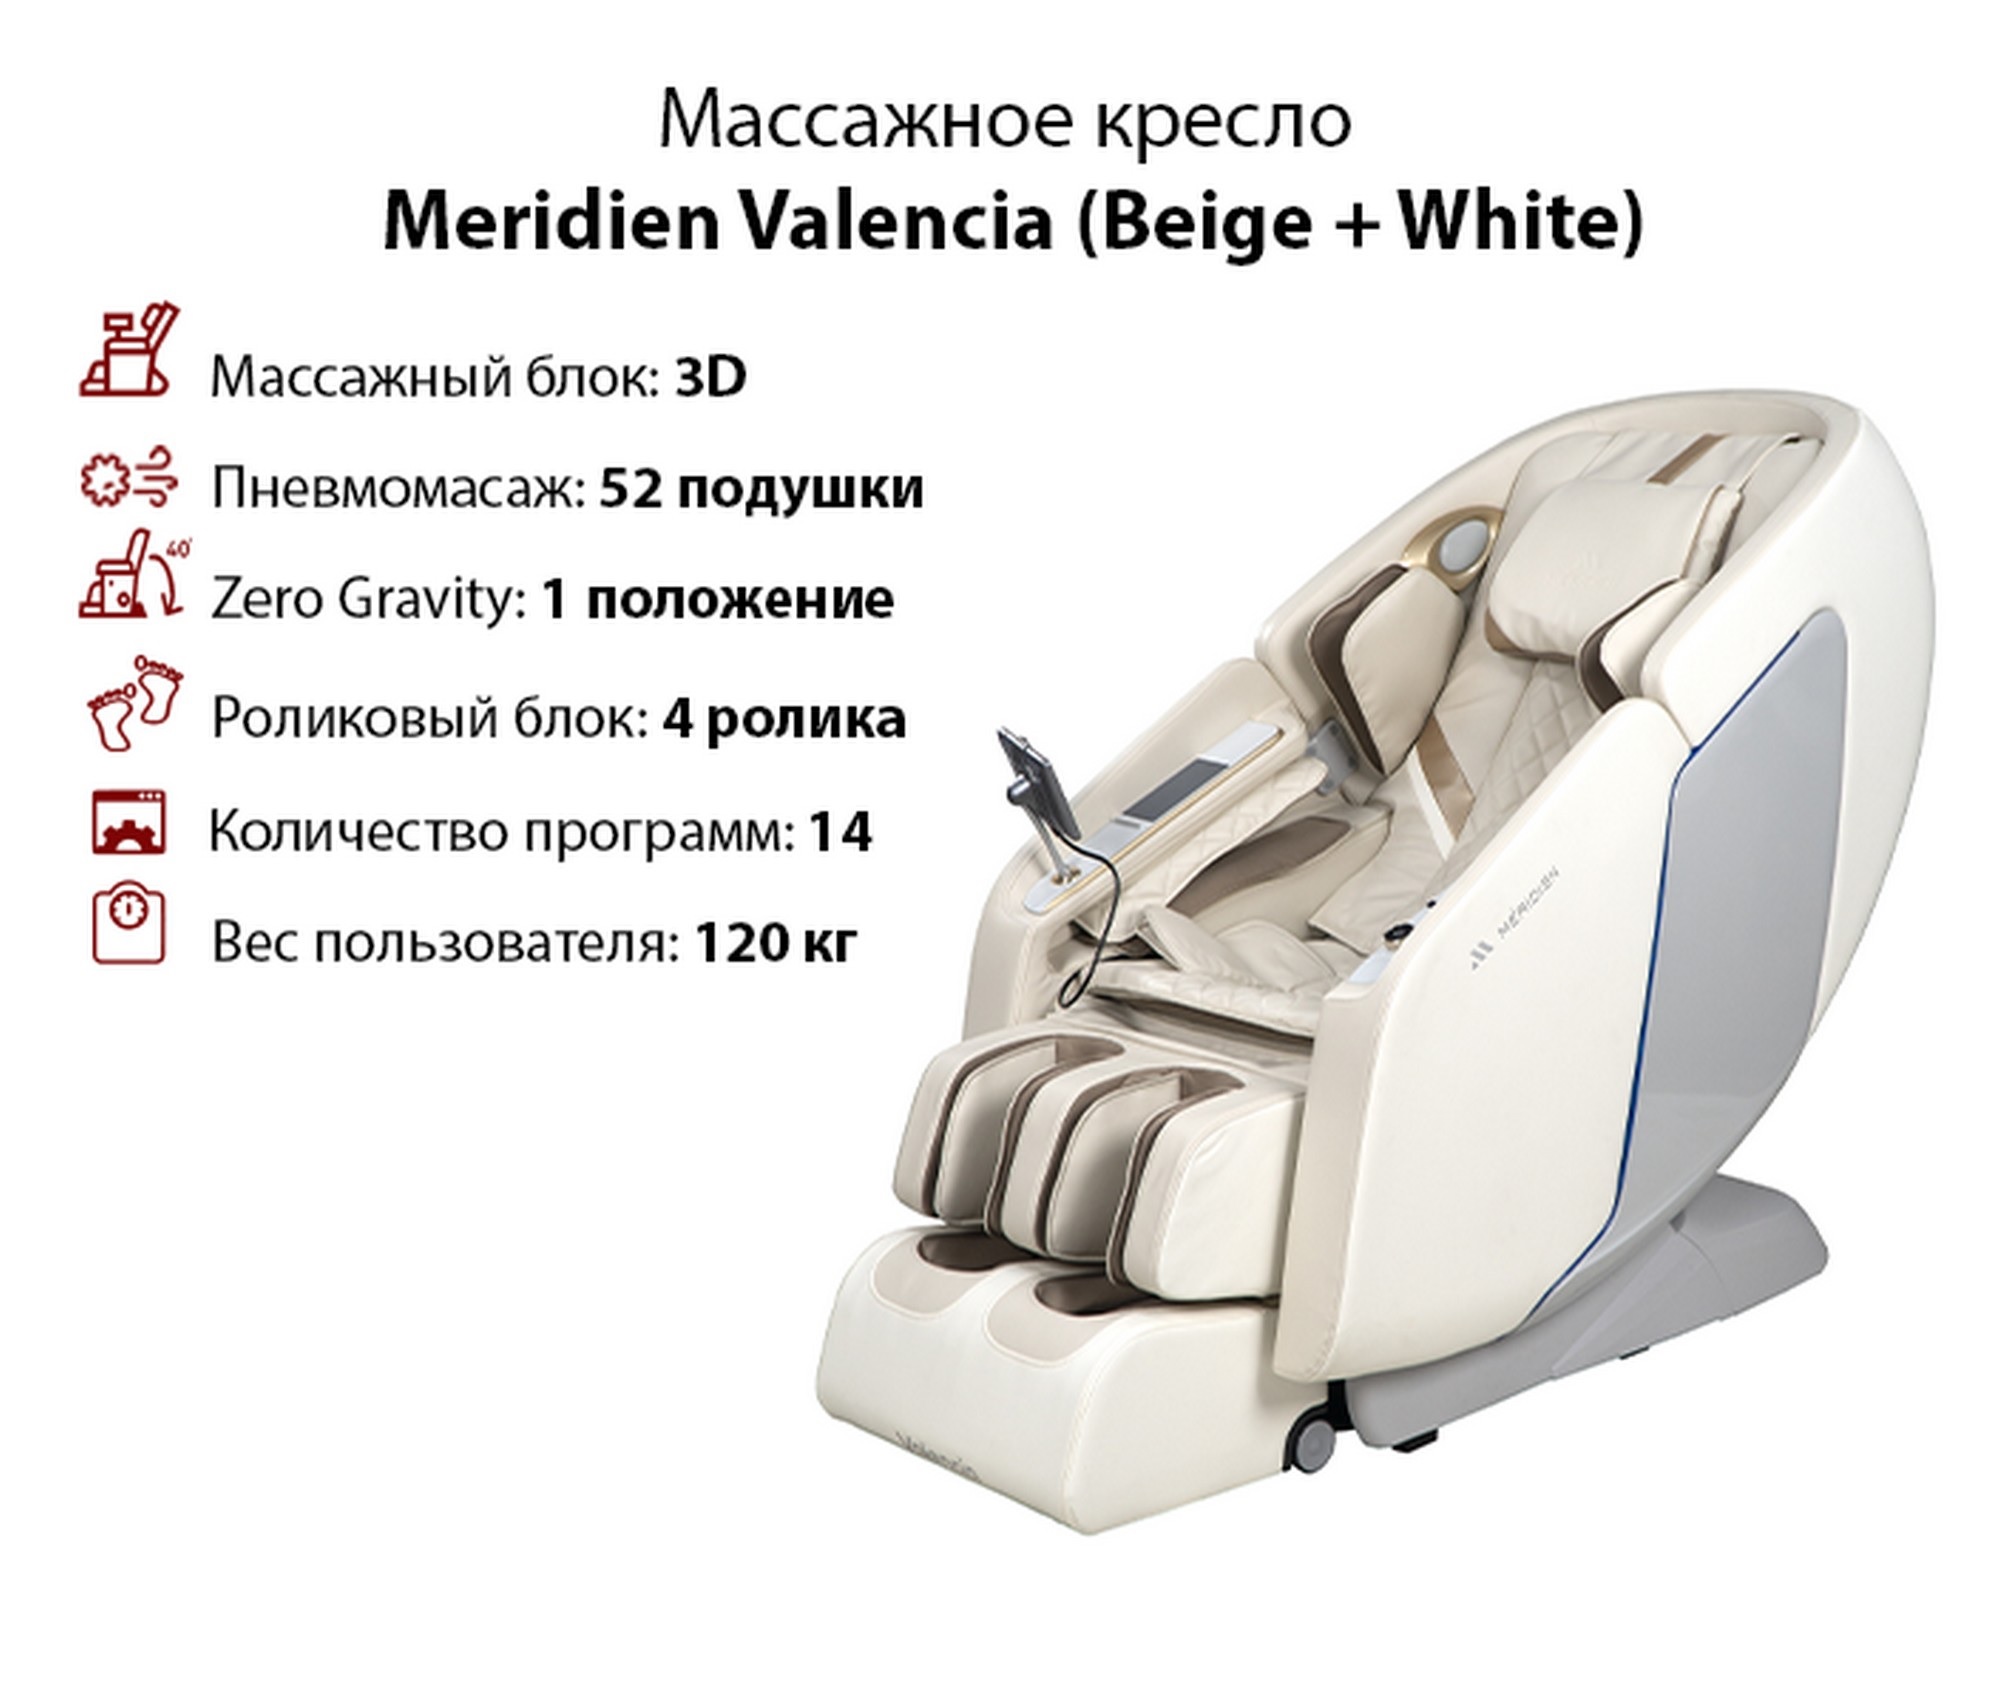 Массажное кресло Meridien Valencia Beige + White 2000_1702